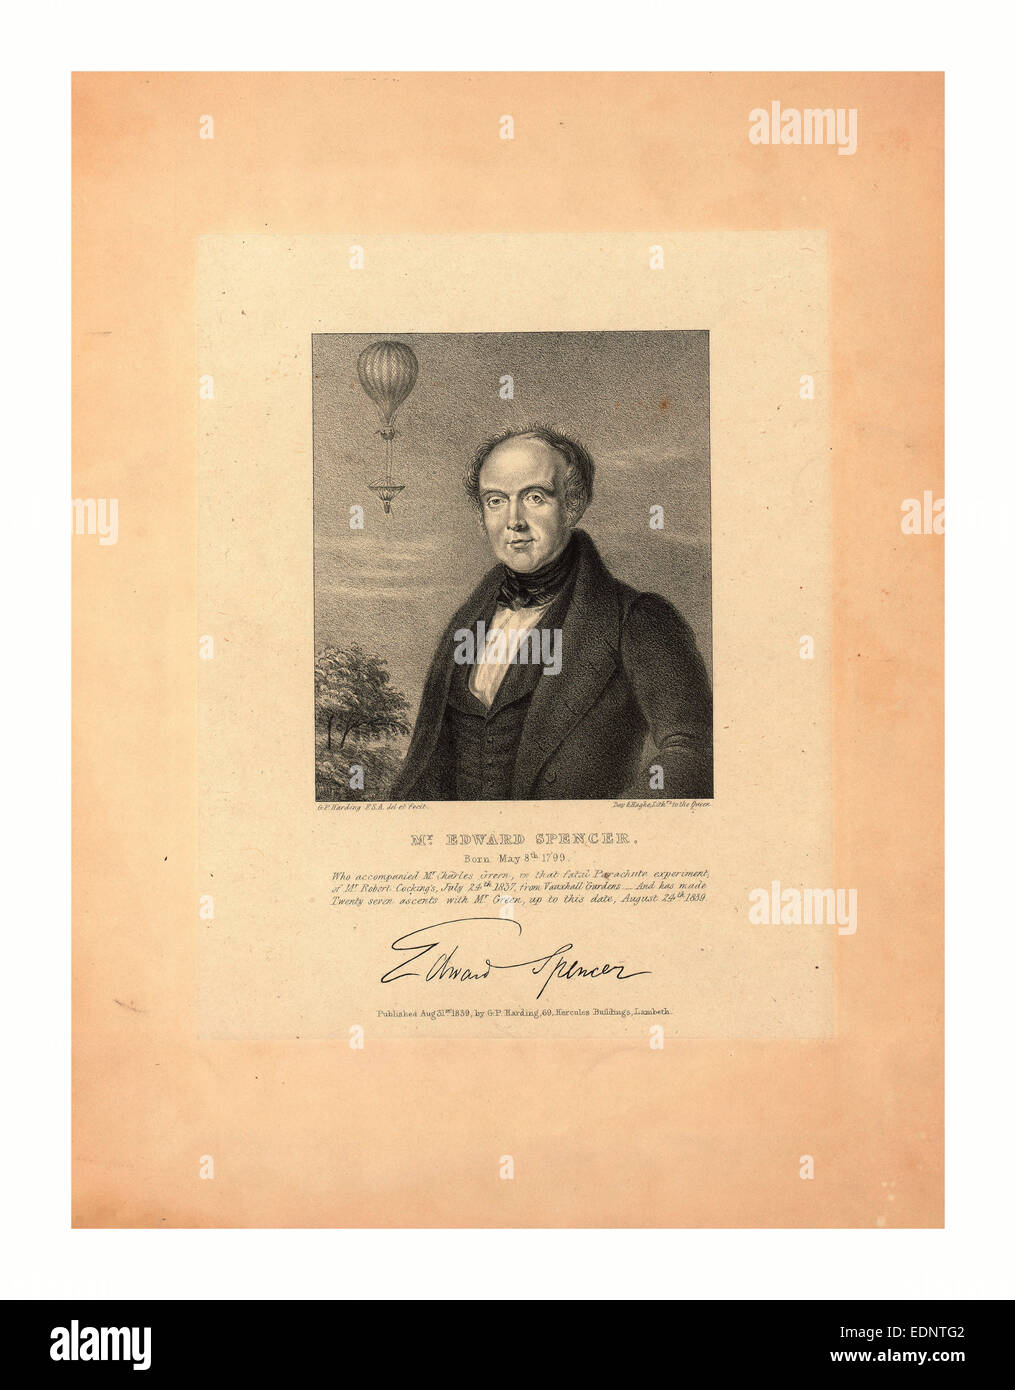 Mr Edward Spencer, geboren 8. Mai 1799, Mr. Charles Green in diesem tödlichen Fallschirm-Experiment begleitet Stockfoto